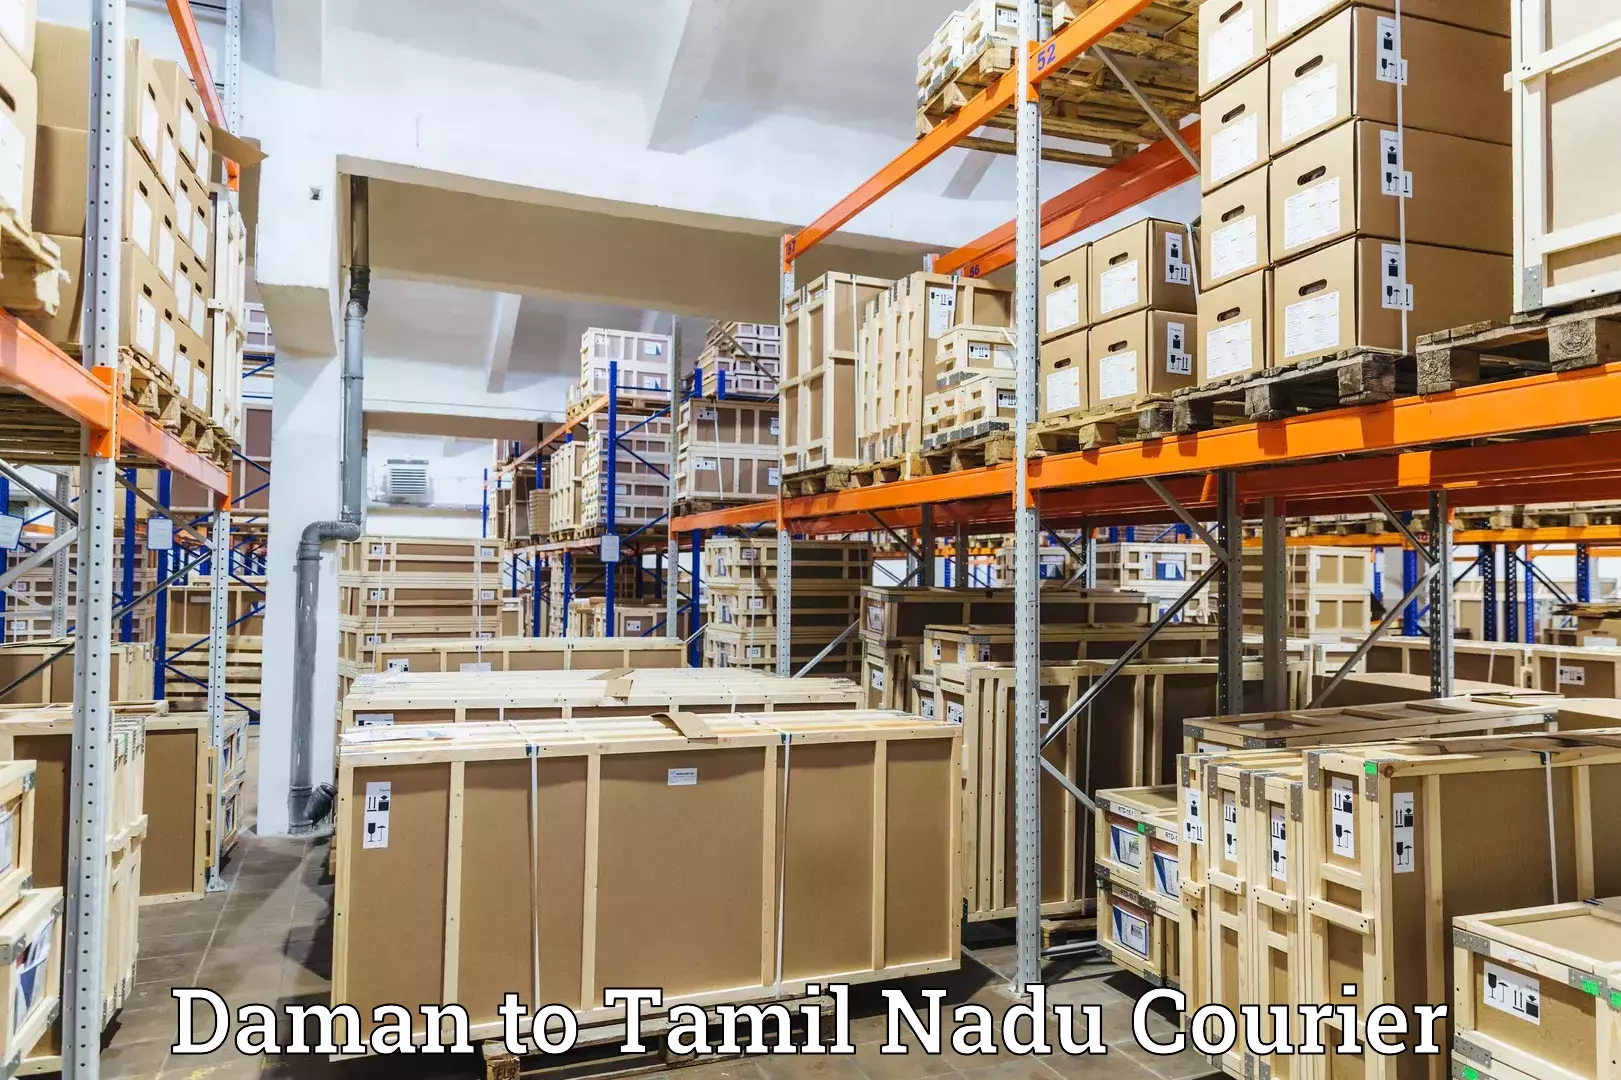 Cargo courier service Daman to Avadi